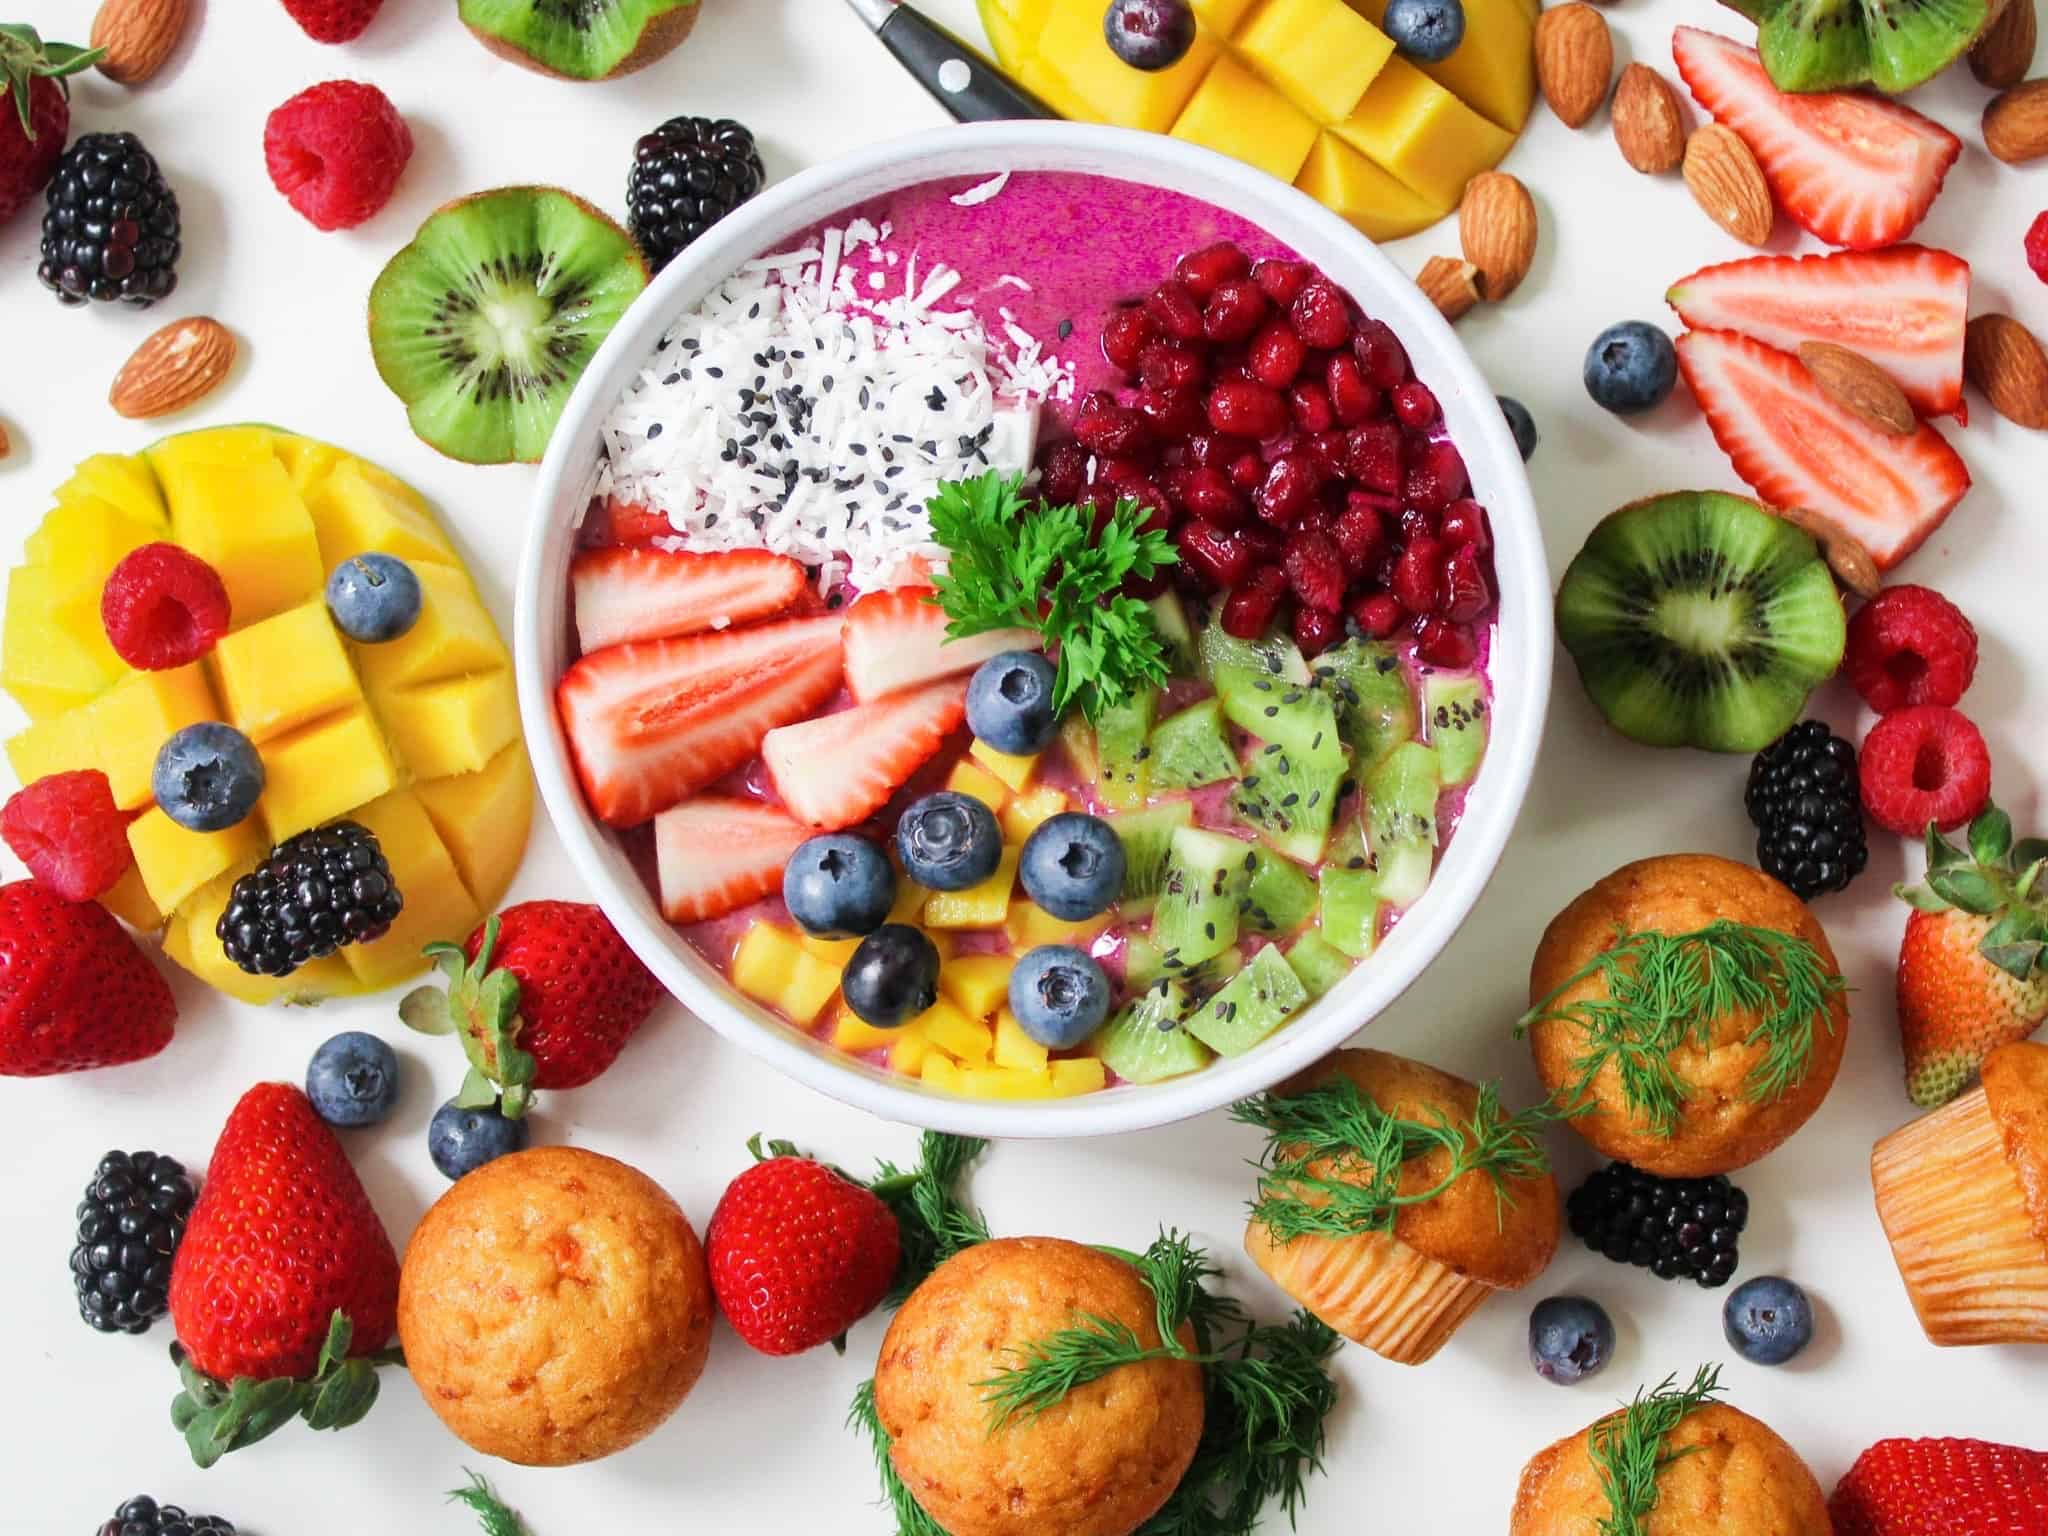 5 ideas for tasty desserts starring fruit